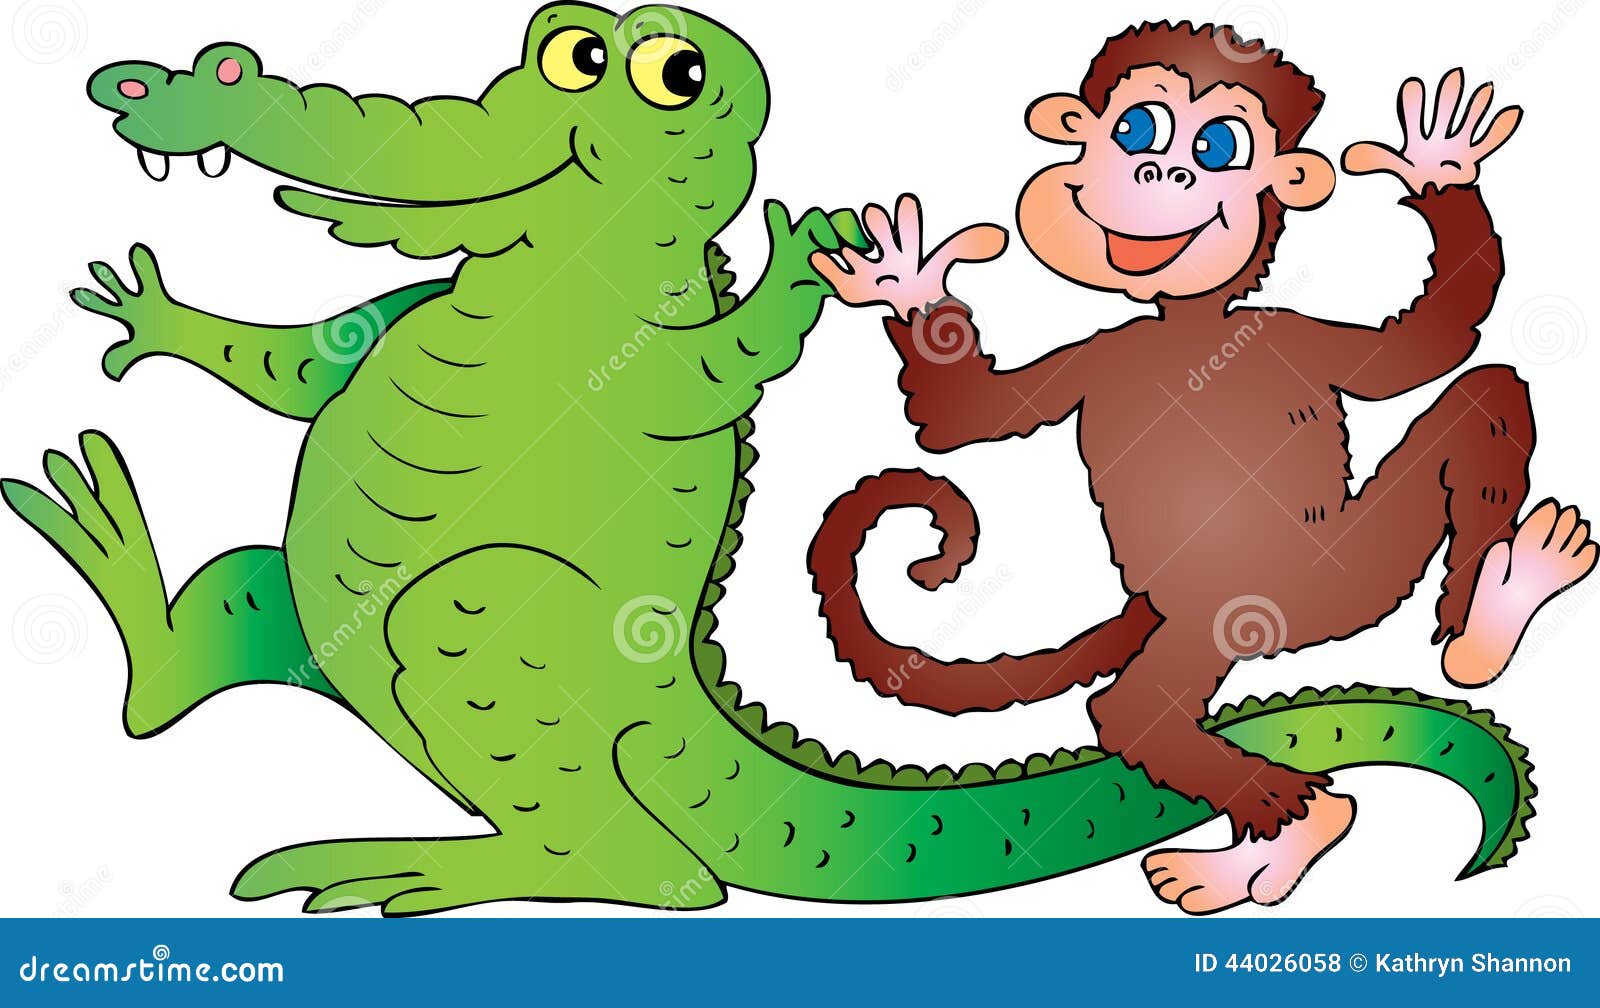 Placa Decorativa Infantil Macaco Sorrindo